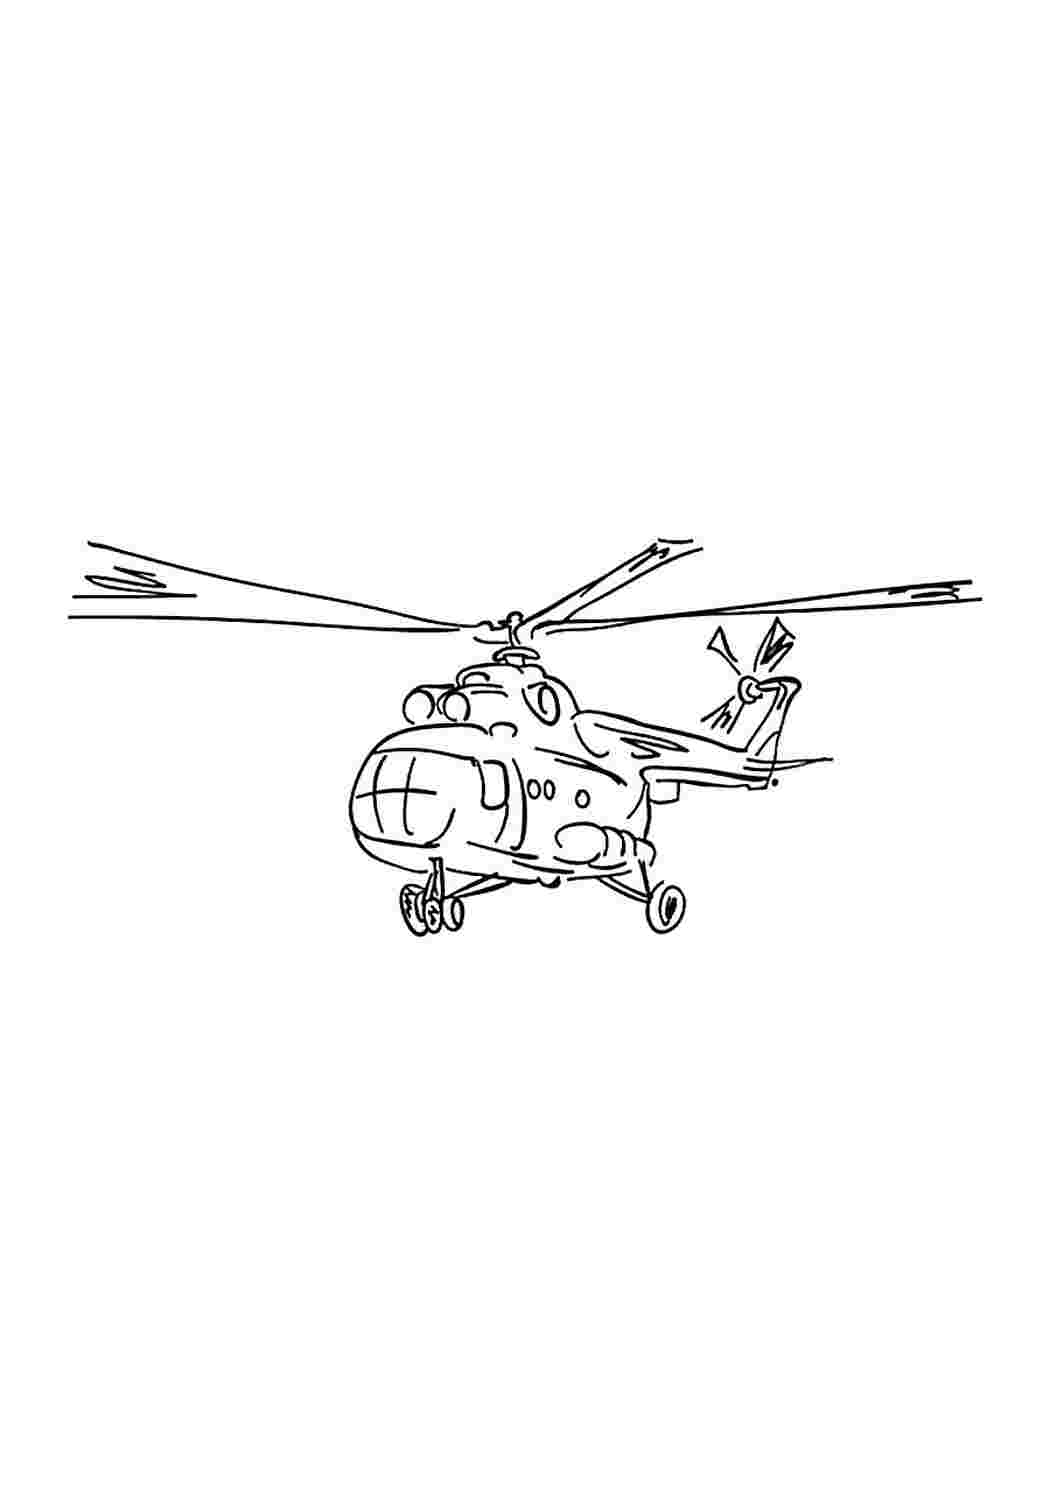 Вертолет ми 8 рисунок